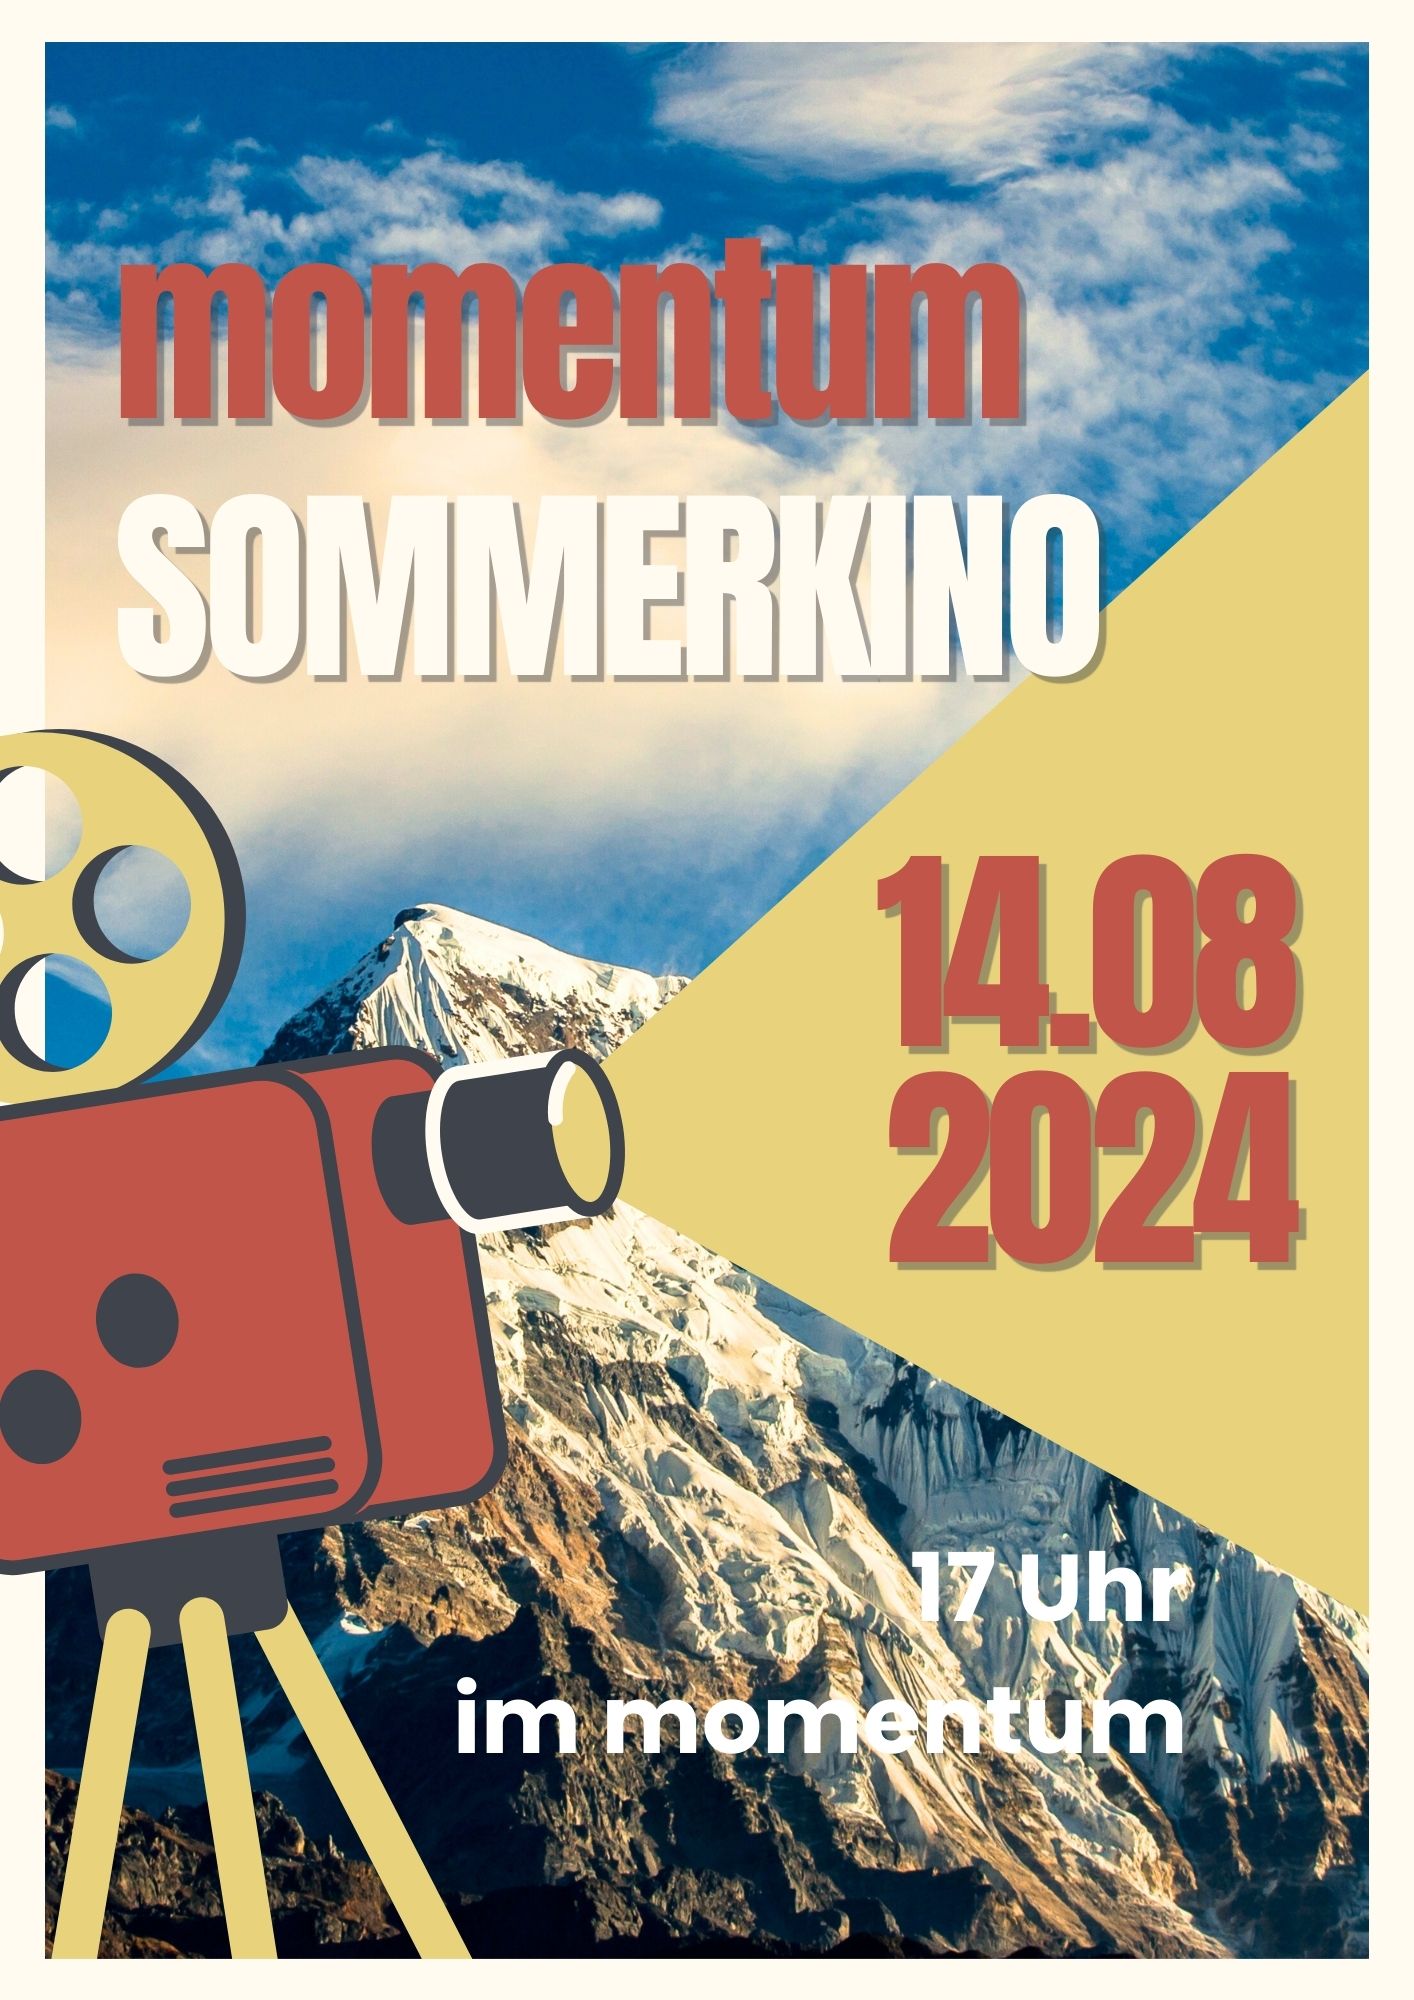 Sommerkino am 14.08.2024 im momentum